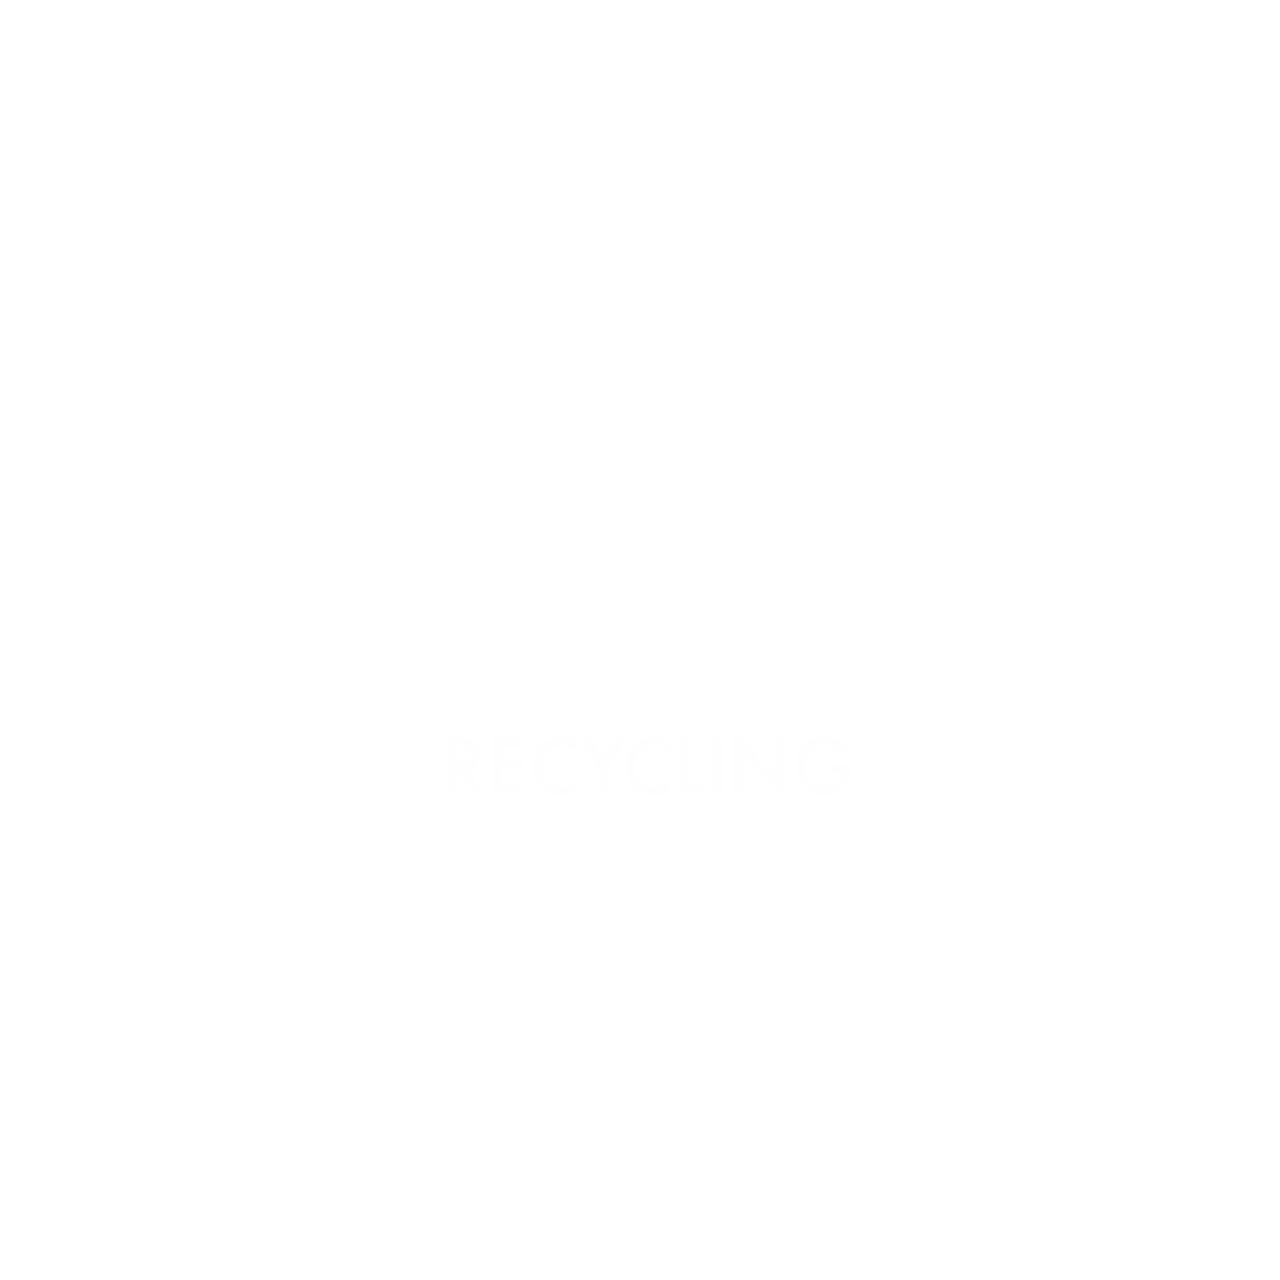 JGL Recycling